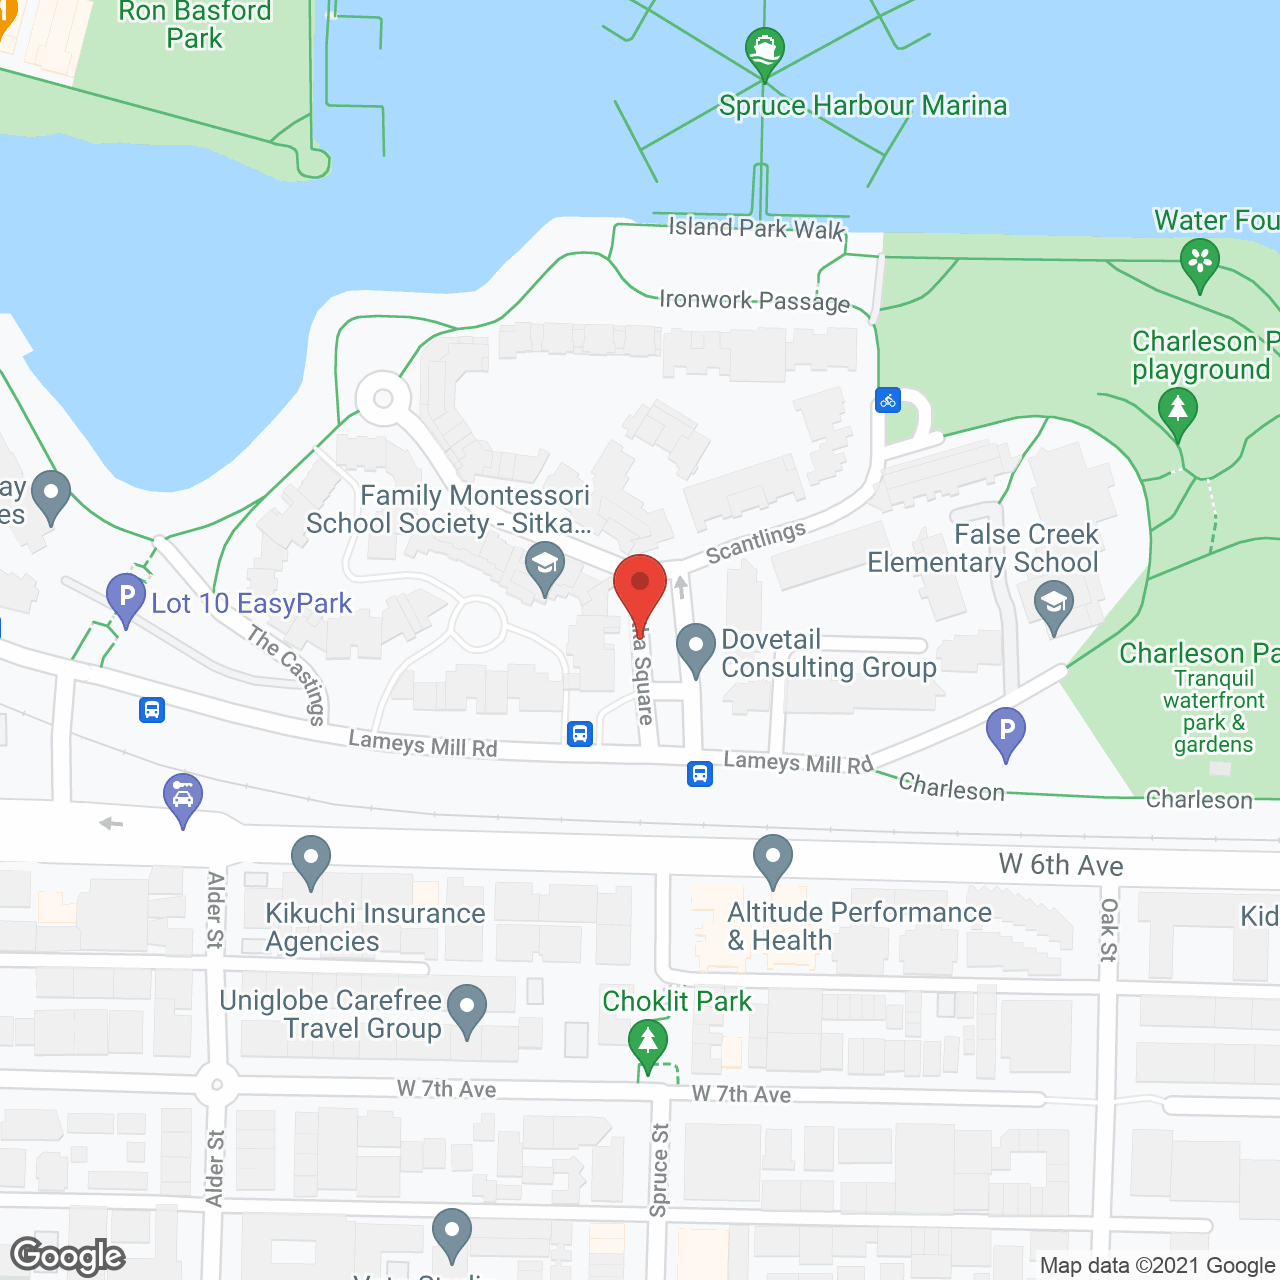 Vancoverden Court in google map